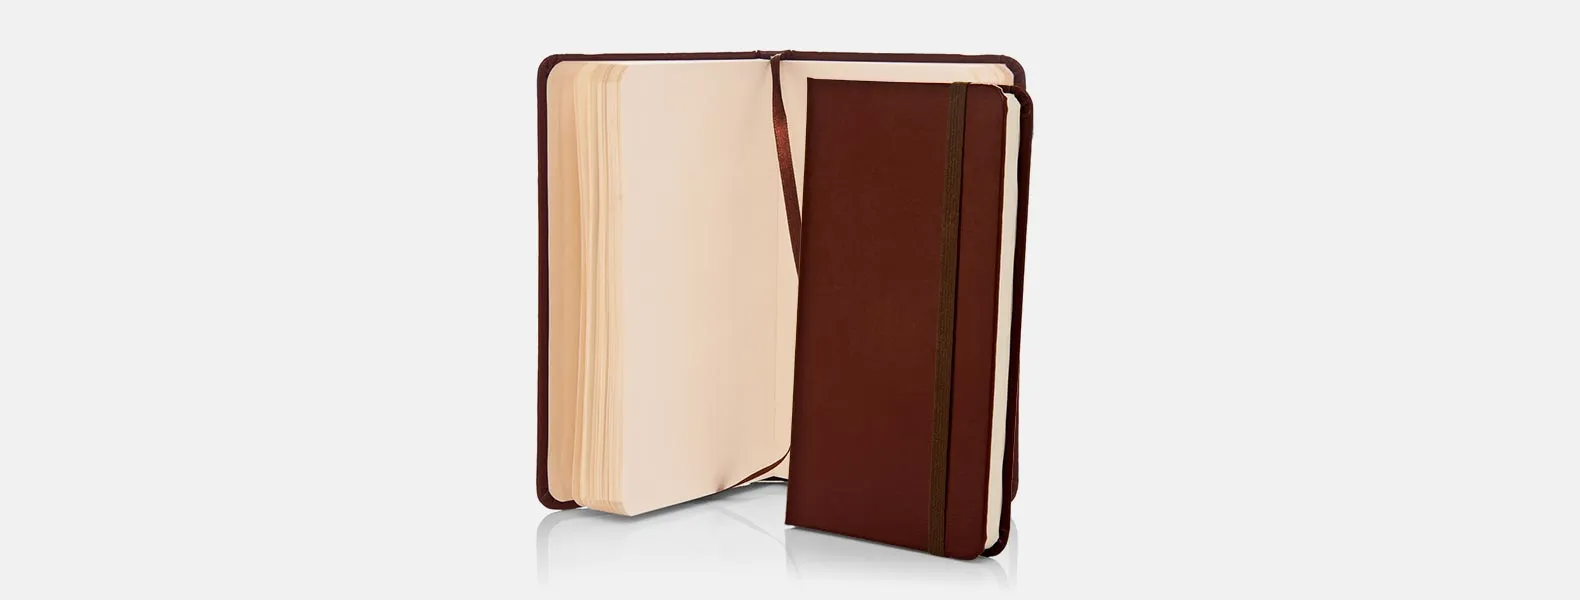 Caderno para anotações marrom com capa dura em Courino. Conta com 80 folhas não pautadas e elástico para fechamento. Gramatura da folha de 70 g/m2.